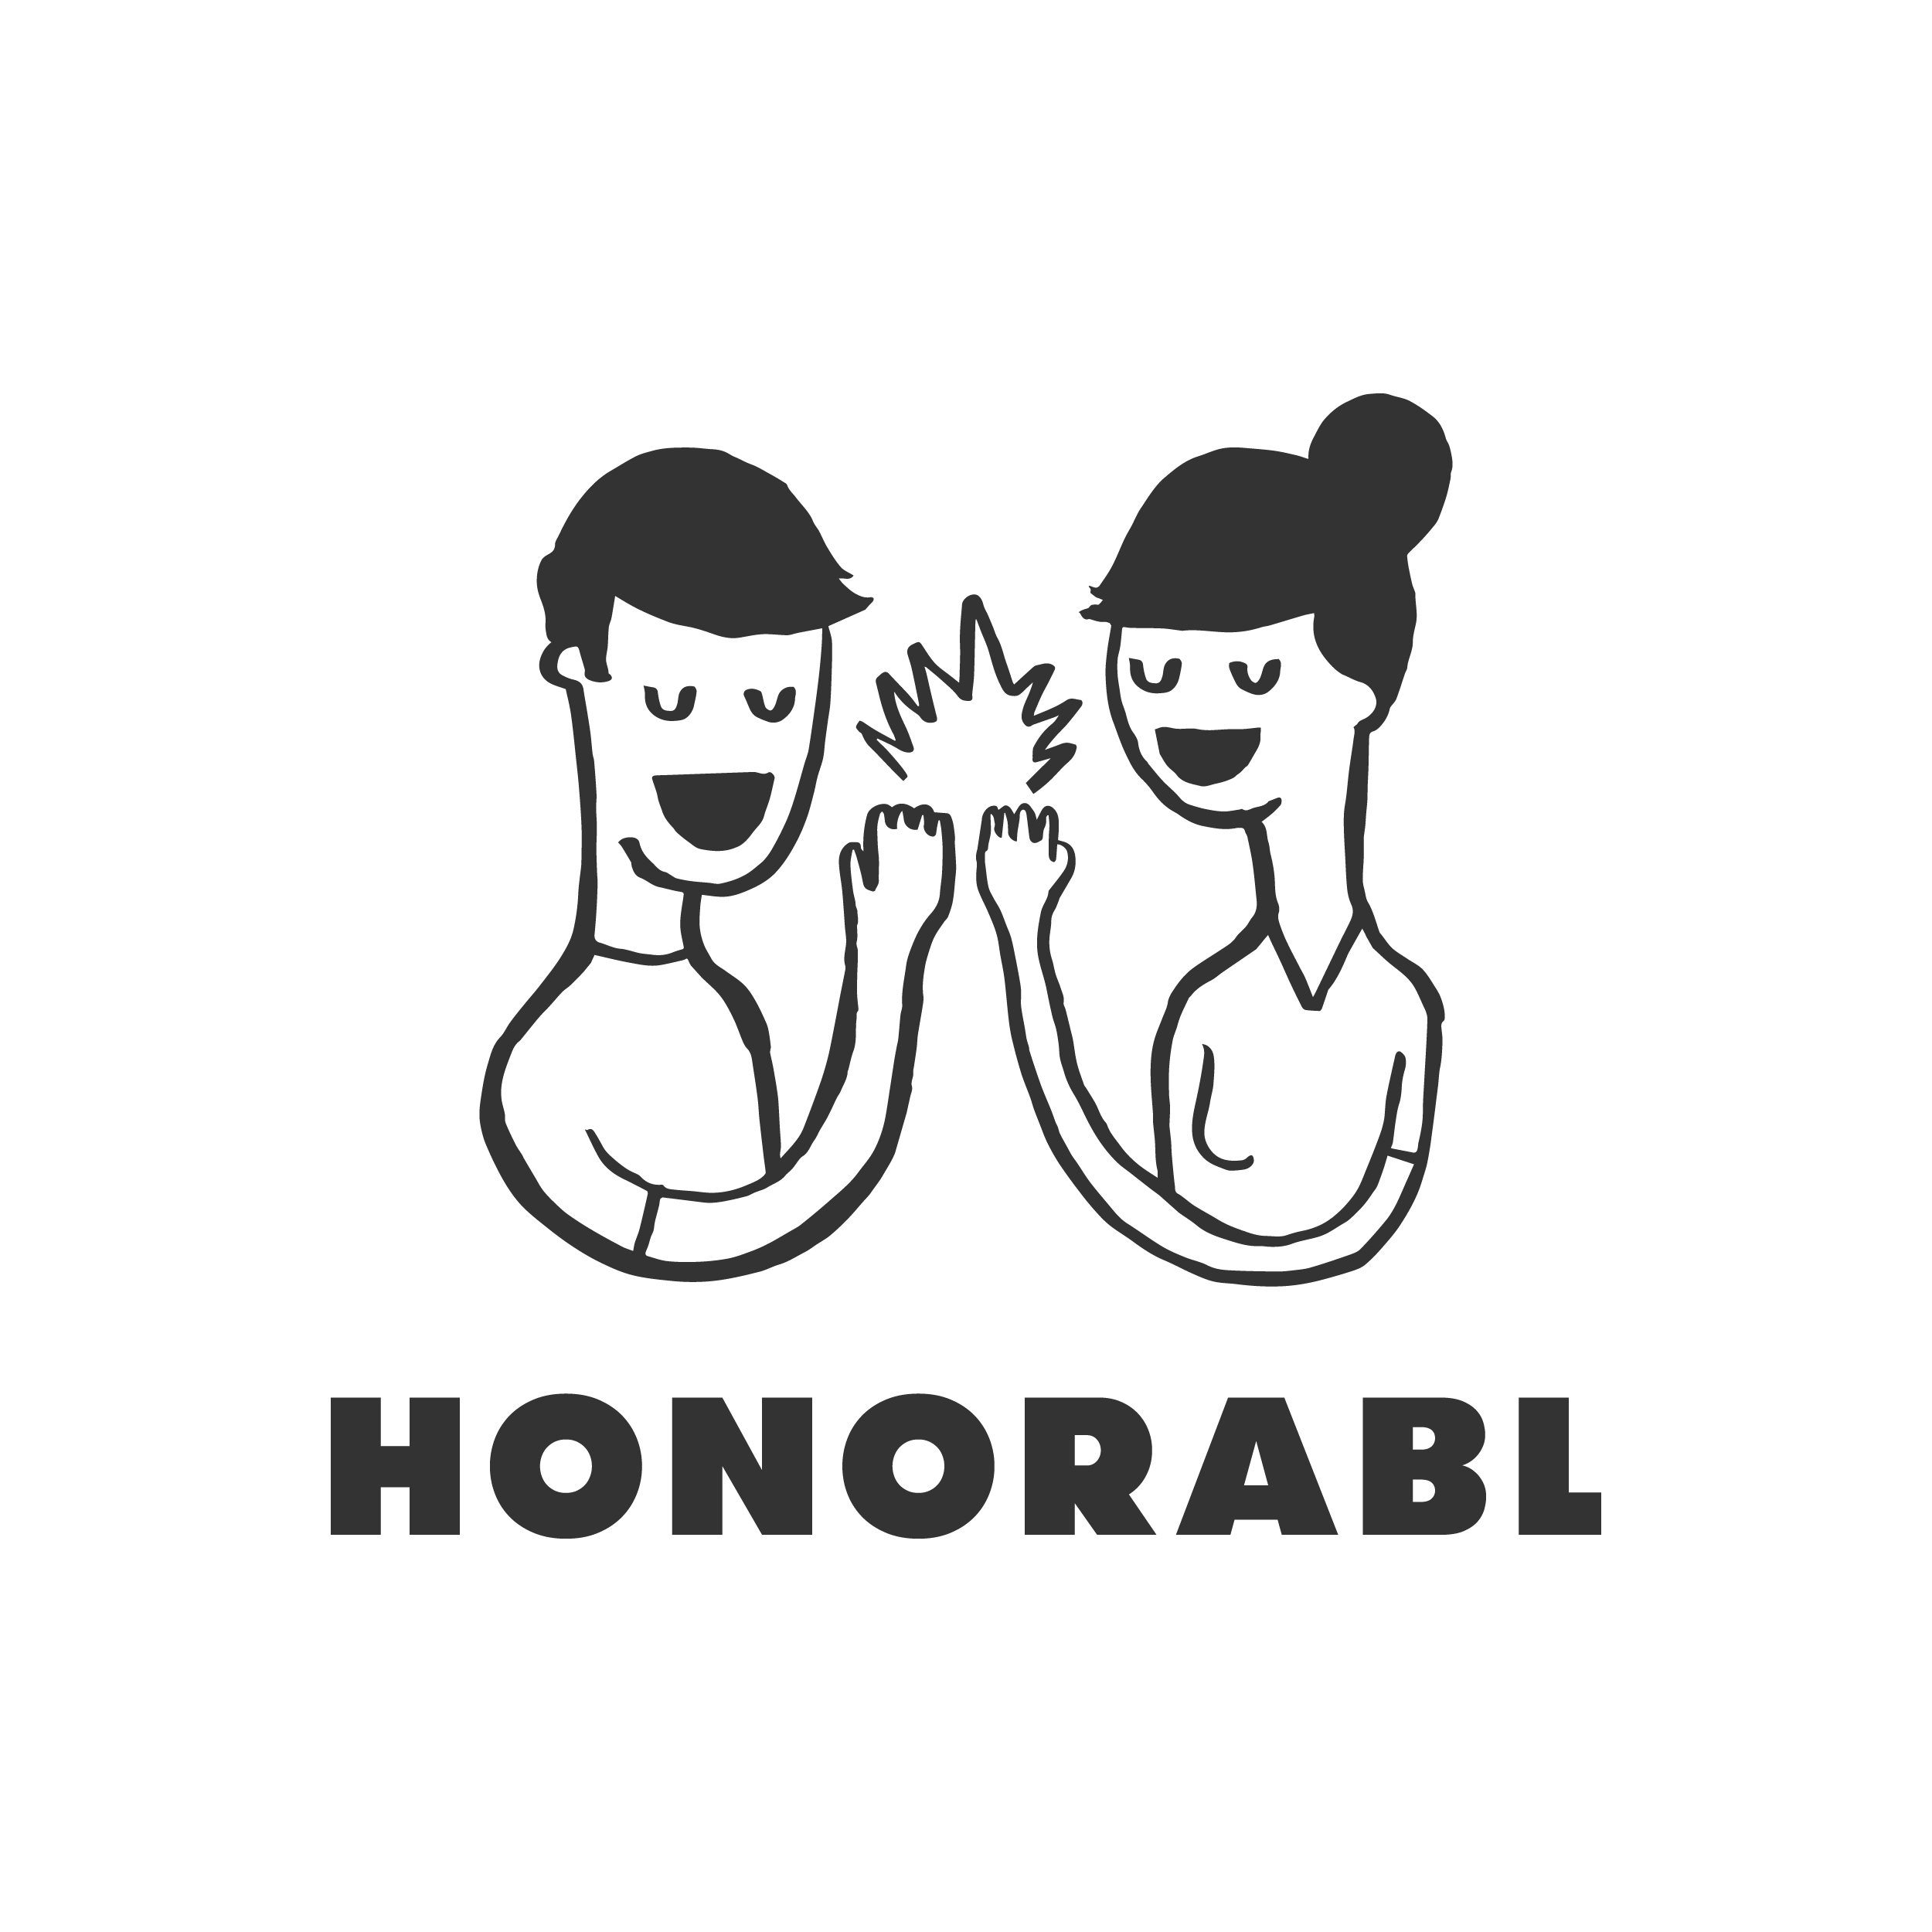 Honorabl